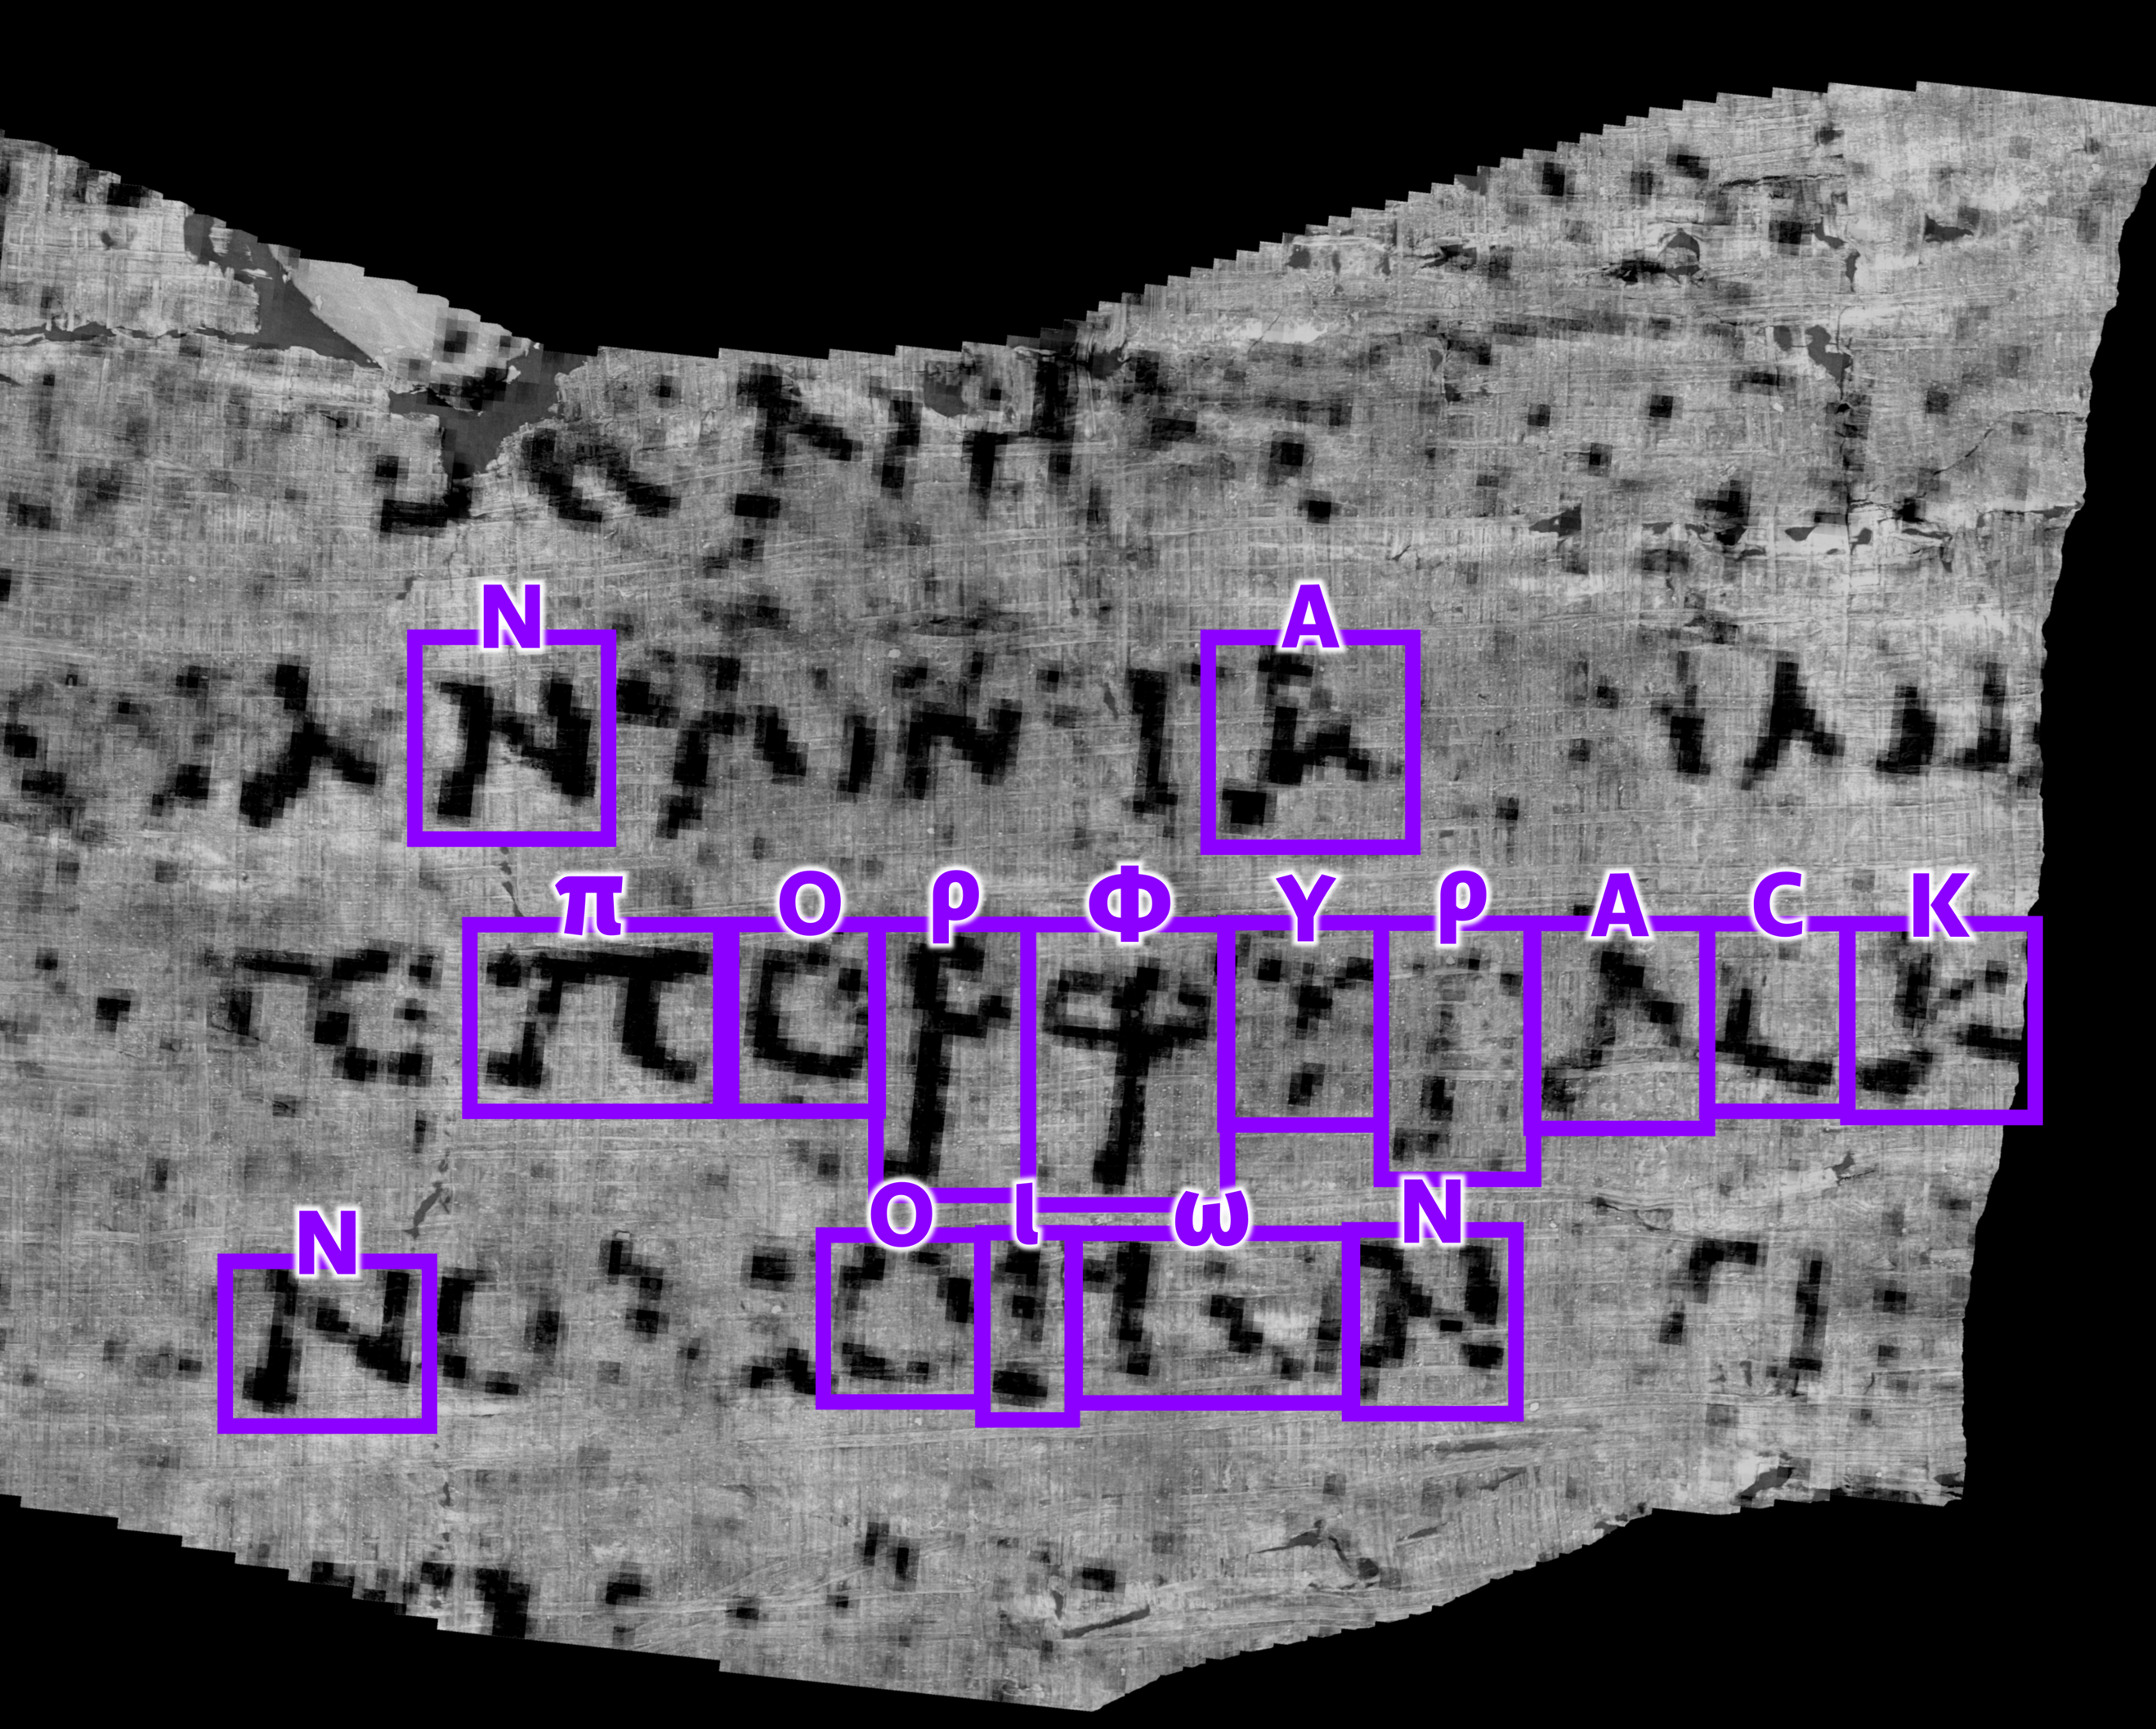 ΠΟΡΦΥΡΑϹ, porphyras, soit "violet" en grec ancien, sur un bout de papyrus enroulé de 4 centimètres carrés. [Vesuvius Challenge]